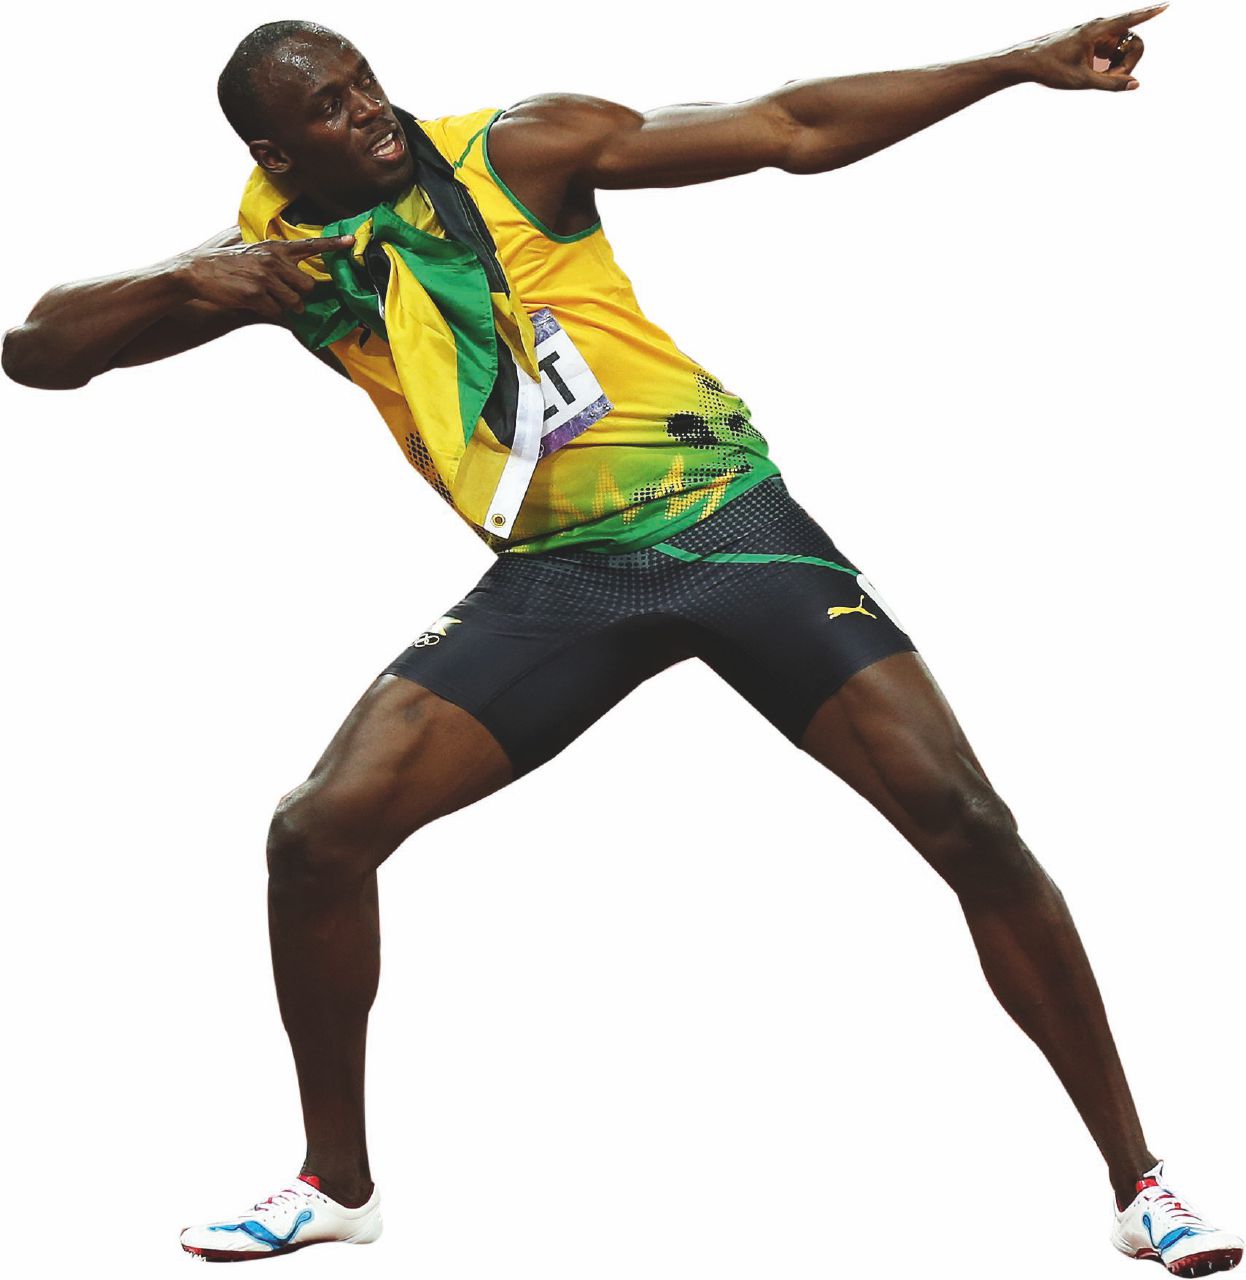 Copertina di Lettera di un “lentigrado” a Usain Bolt